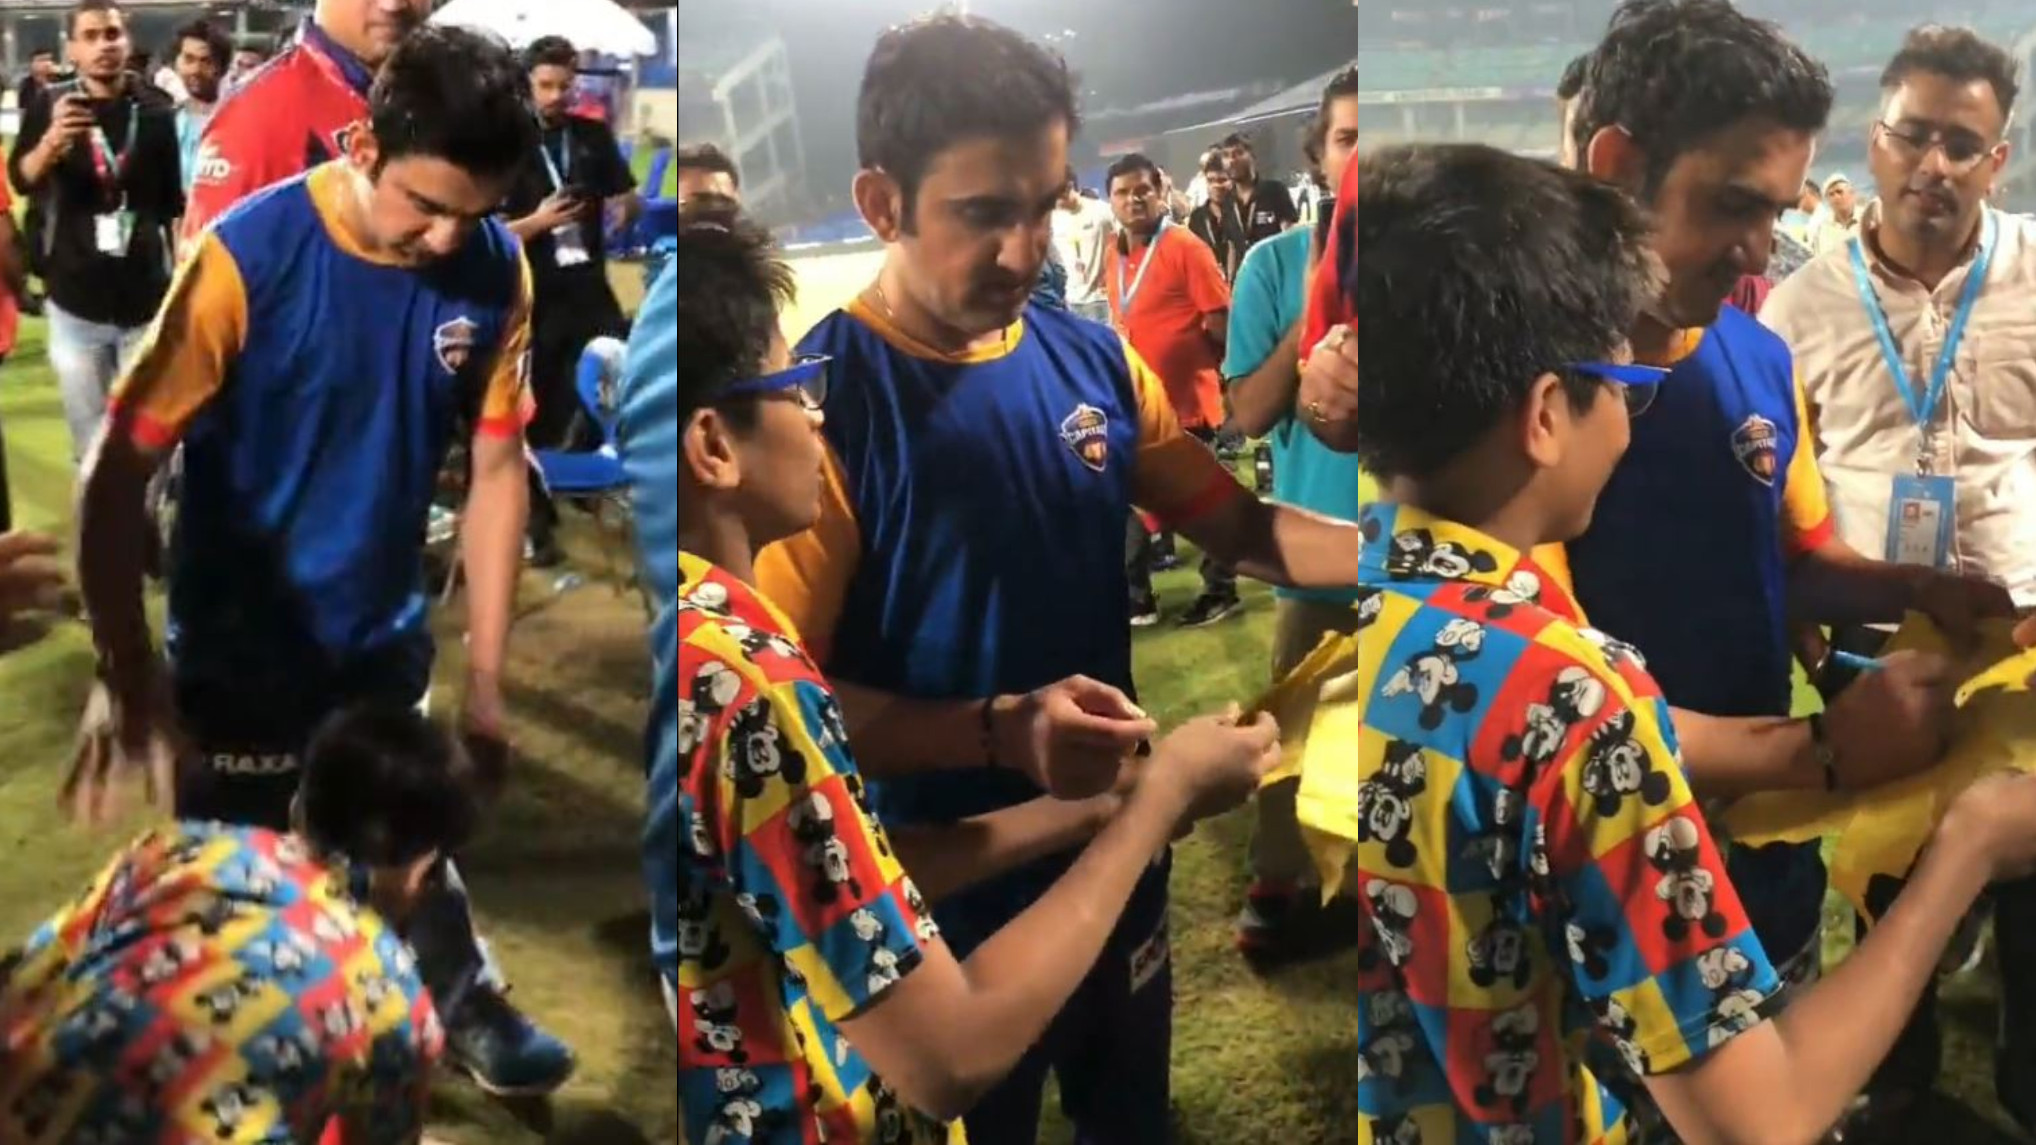 LLC T20 2022: WATCH- Gautam Gambhir makes a young fan’s day by giving him an autograph